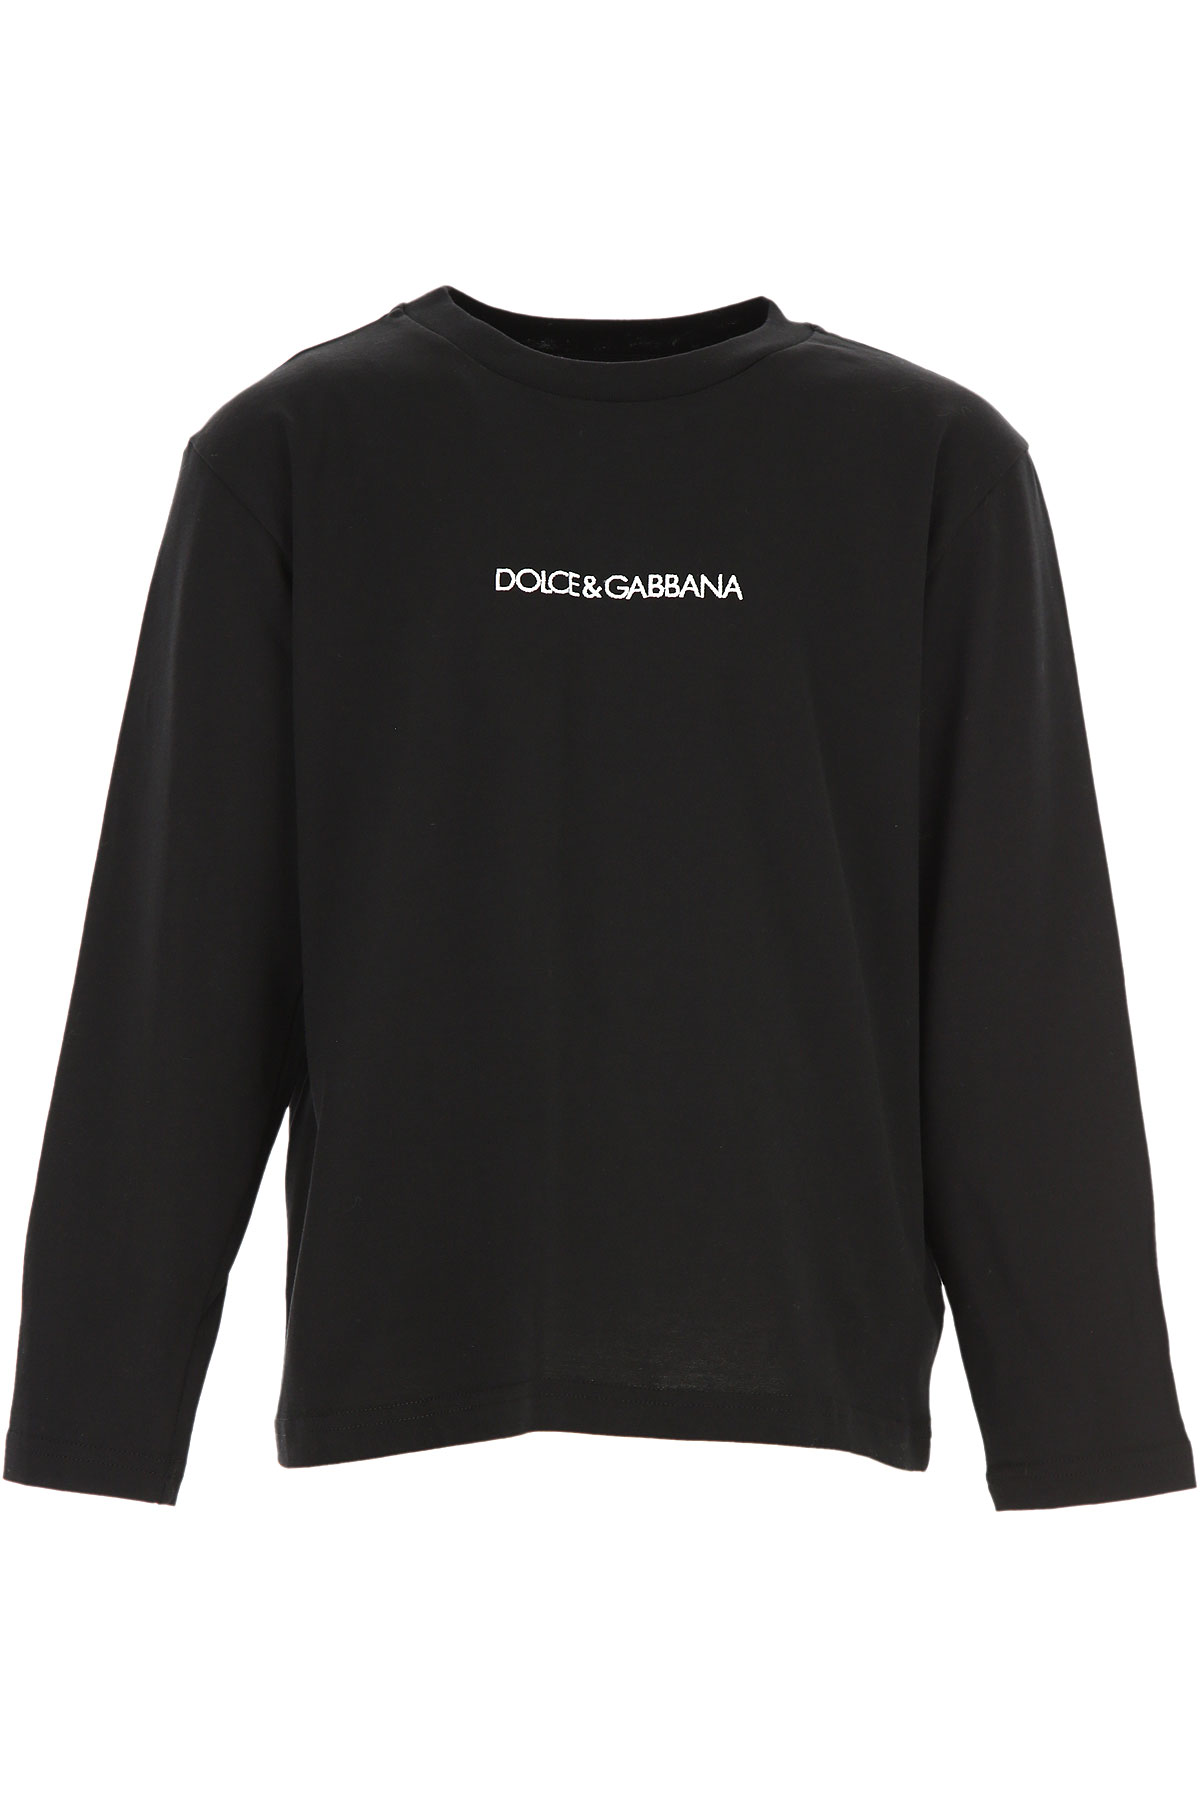 Dolce & Gabbana Kinder T-Shirt für Jungen Günstig im Sale, Schwarz, Baumwolle, 2017, 2Y 3Y 4Y 6Y 8Y